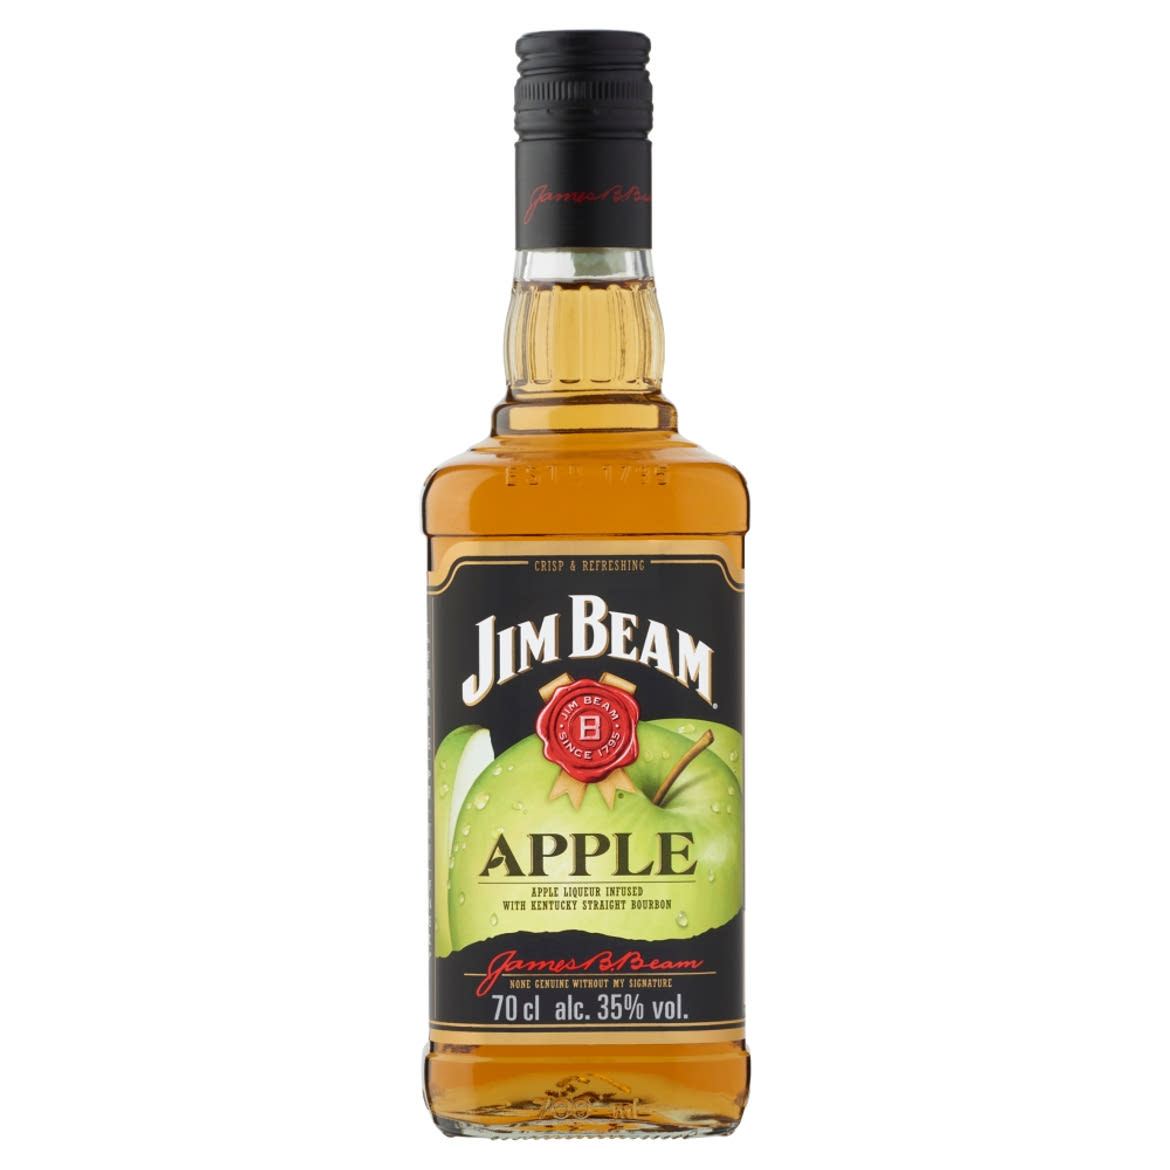 Jim Beam Apple alma ízesítésű Bourbon whiskey alapú likőr 35%